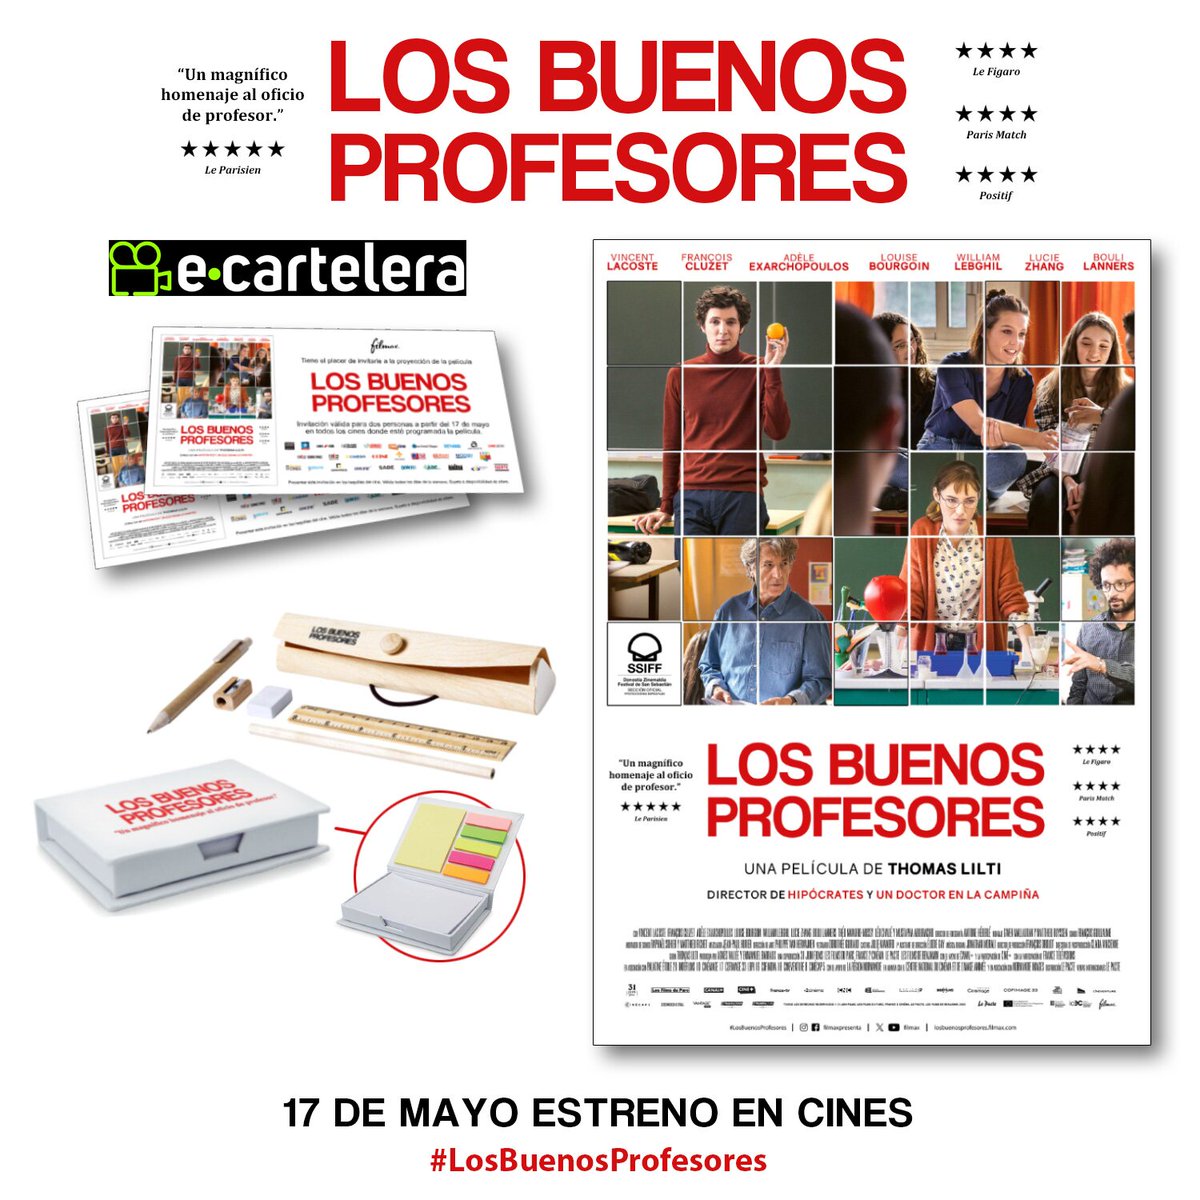 SORTEAMOS 3 packs de merchandising y 3 entradas dobles de #LosBuenosProfesores, el 17 de mayo en cines 🧑‍🏫

Participa 👉 ver.ec/b467